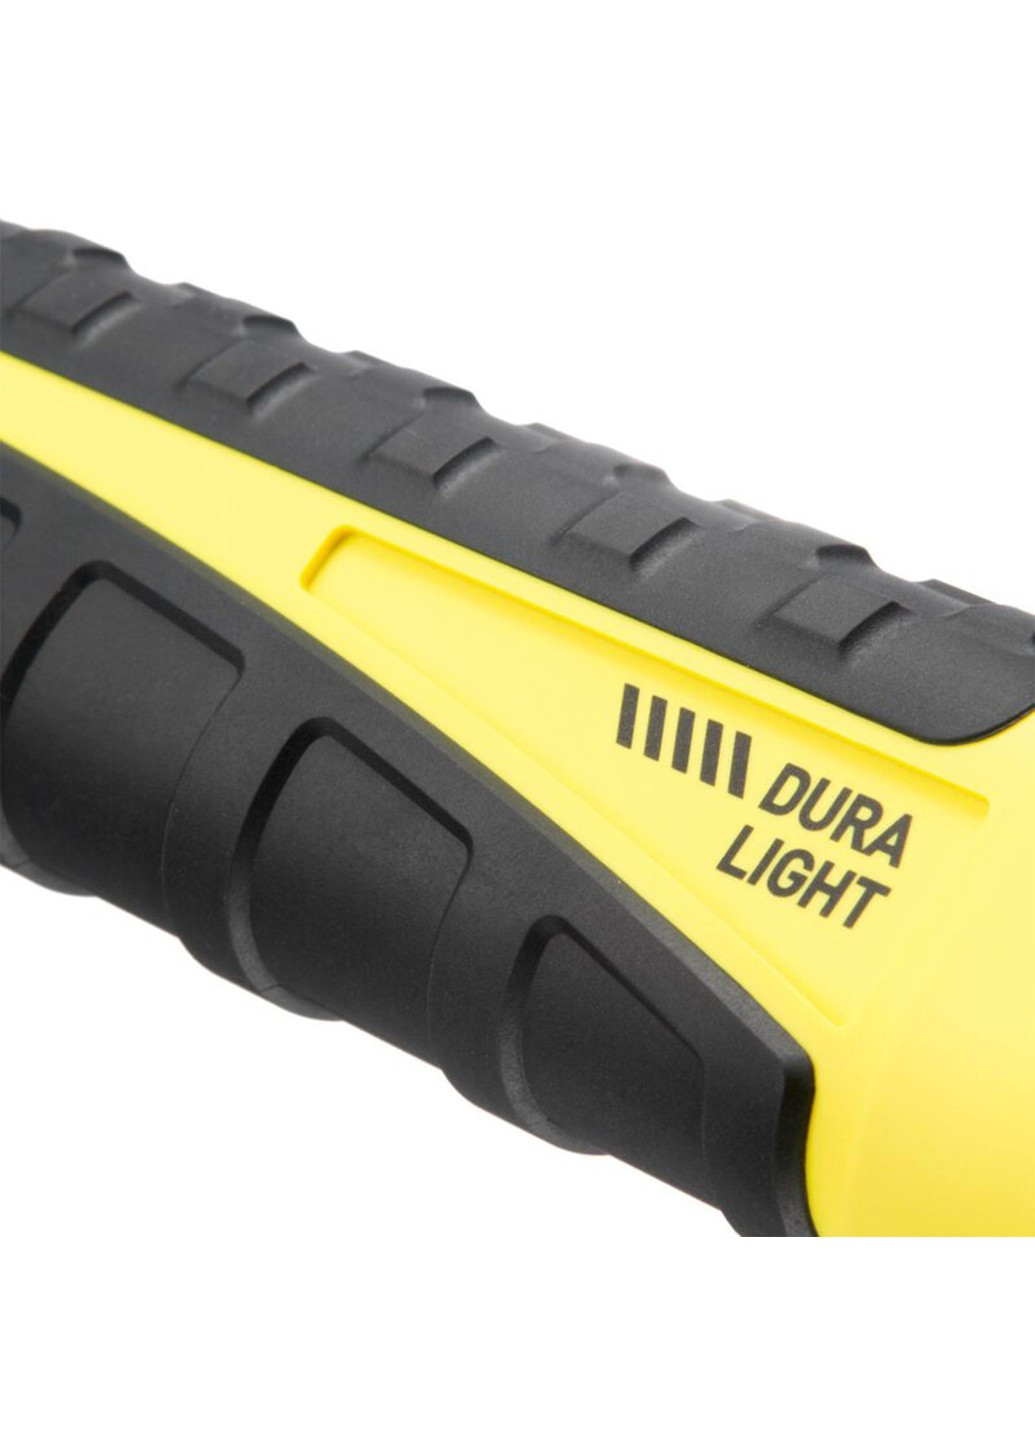 Фонарь профессиональный Dura Light (920 Lm) USB Rechargeable (PHH0111) Mactronic (258661766)